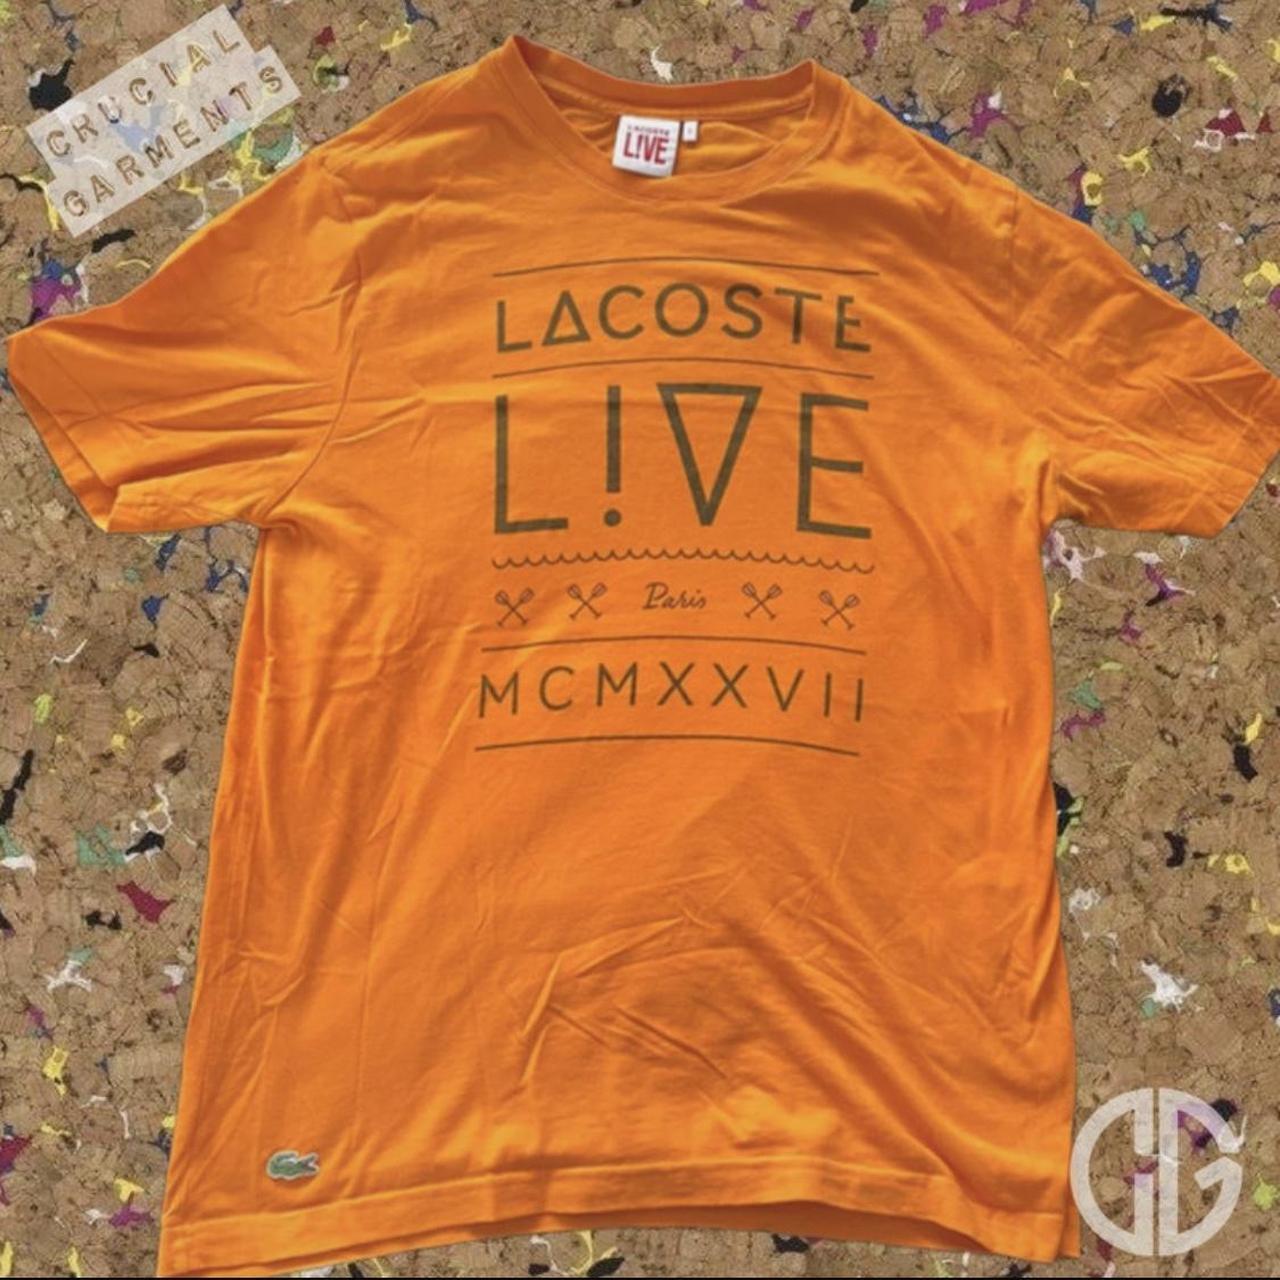 Lacoste LIVE Vintage tshirt Size 5 Large / slim... - Depop